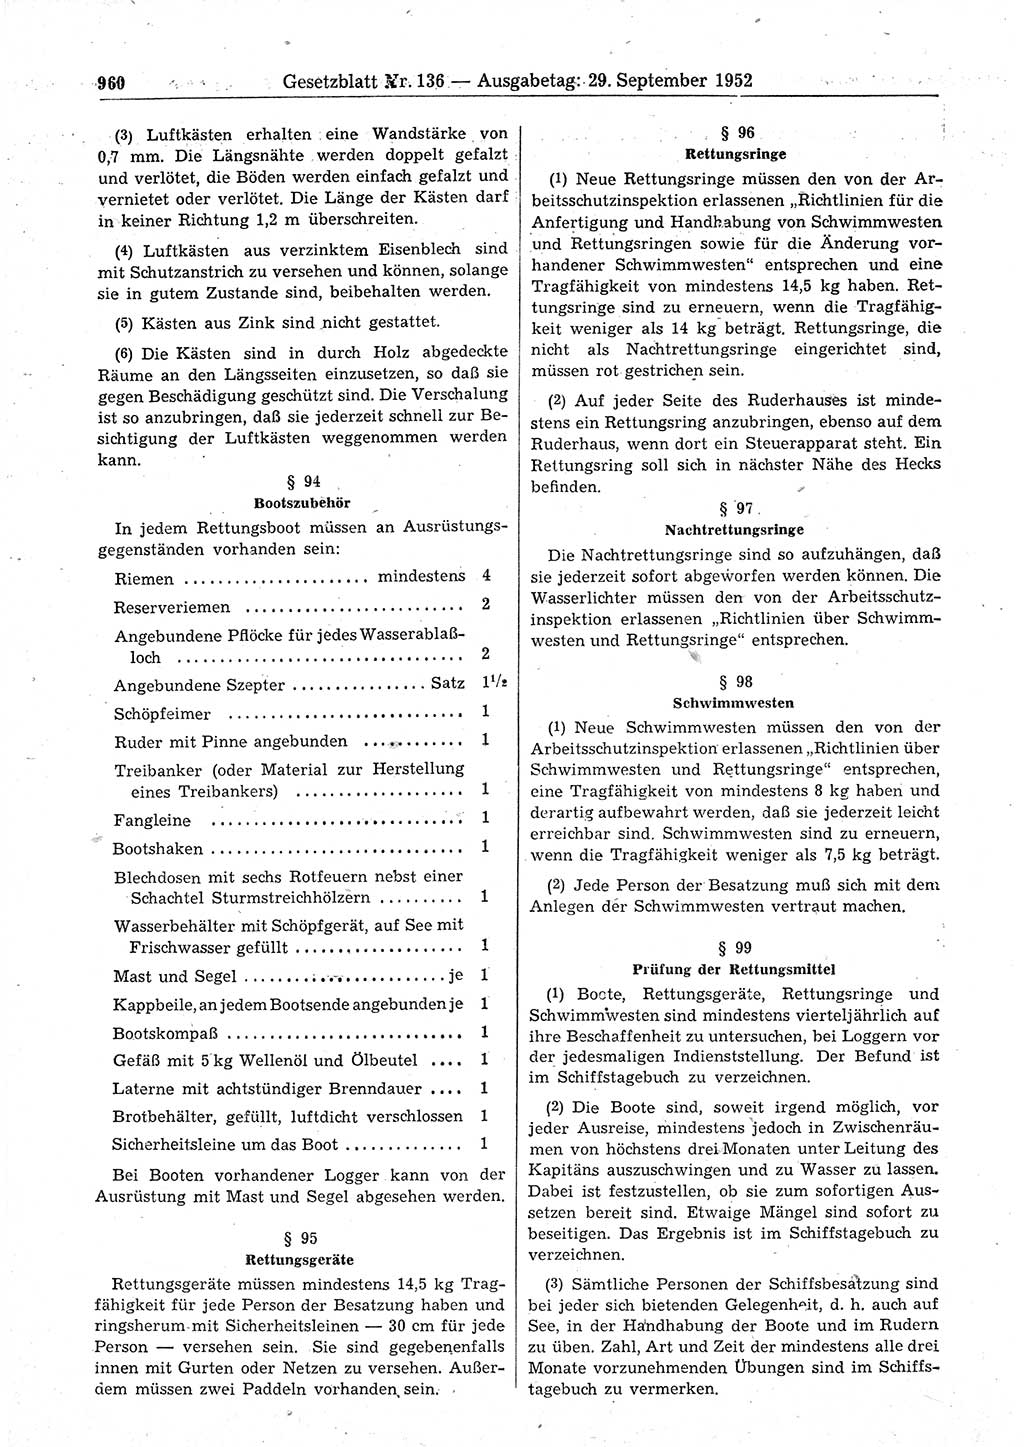 Gesetzblatt (GBl.) der Deutschen Demokratischen Republik (DDR) 1952, Seite 960 (GBl. DDR 1952, S. 960)